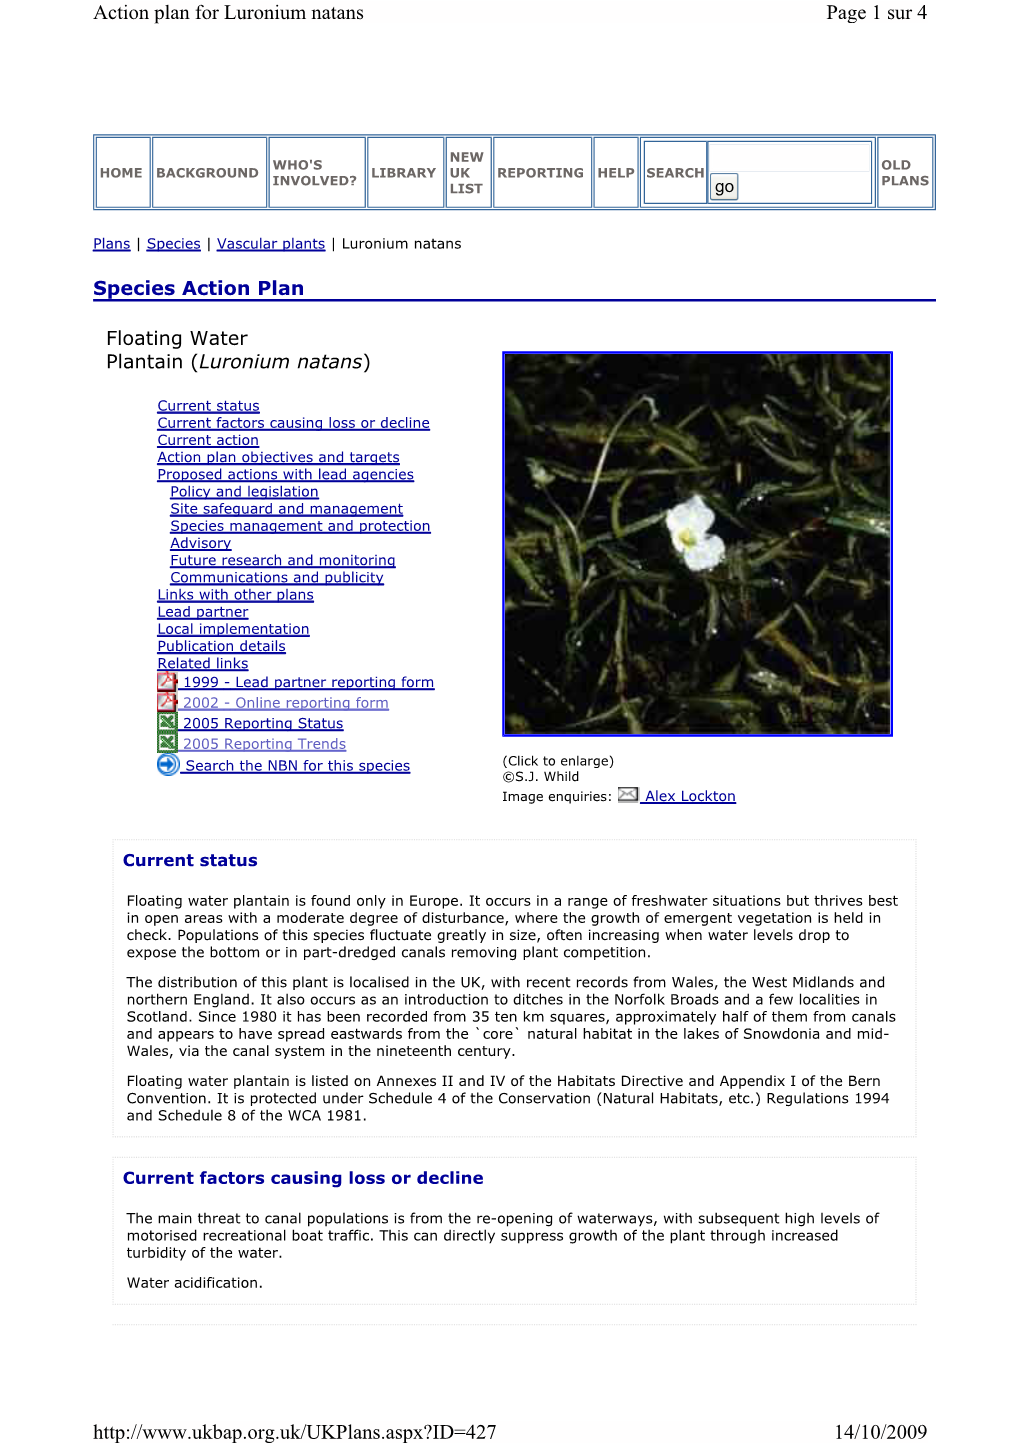 Page 1 Sur 4 Action Plan for Luronium Natans 14/10/2009